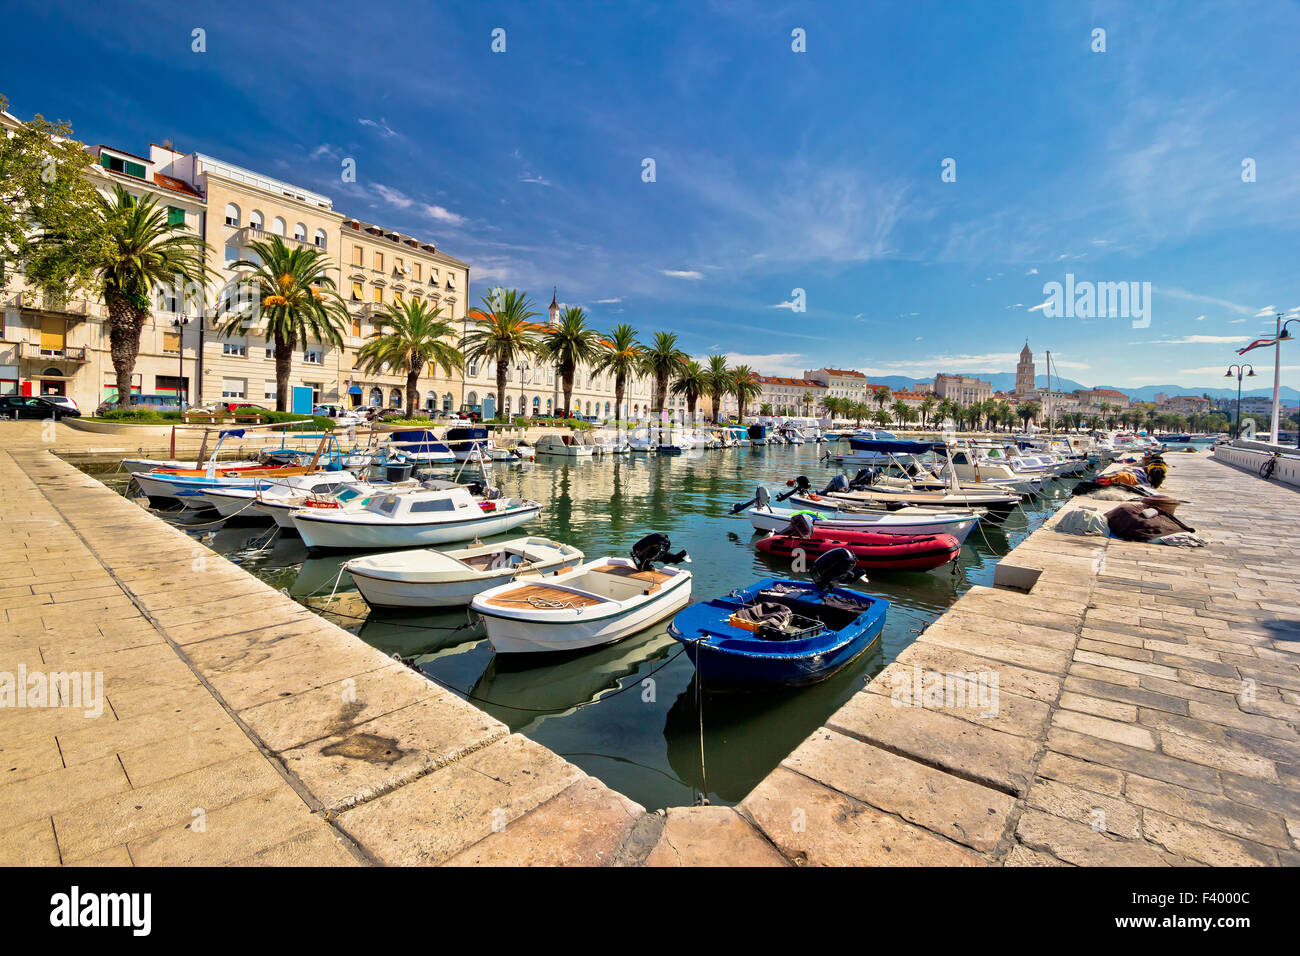 Adriatic city of Split view Stock Photo